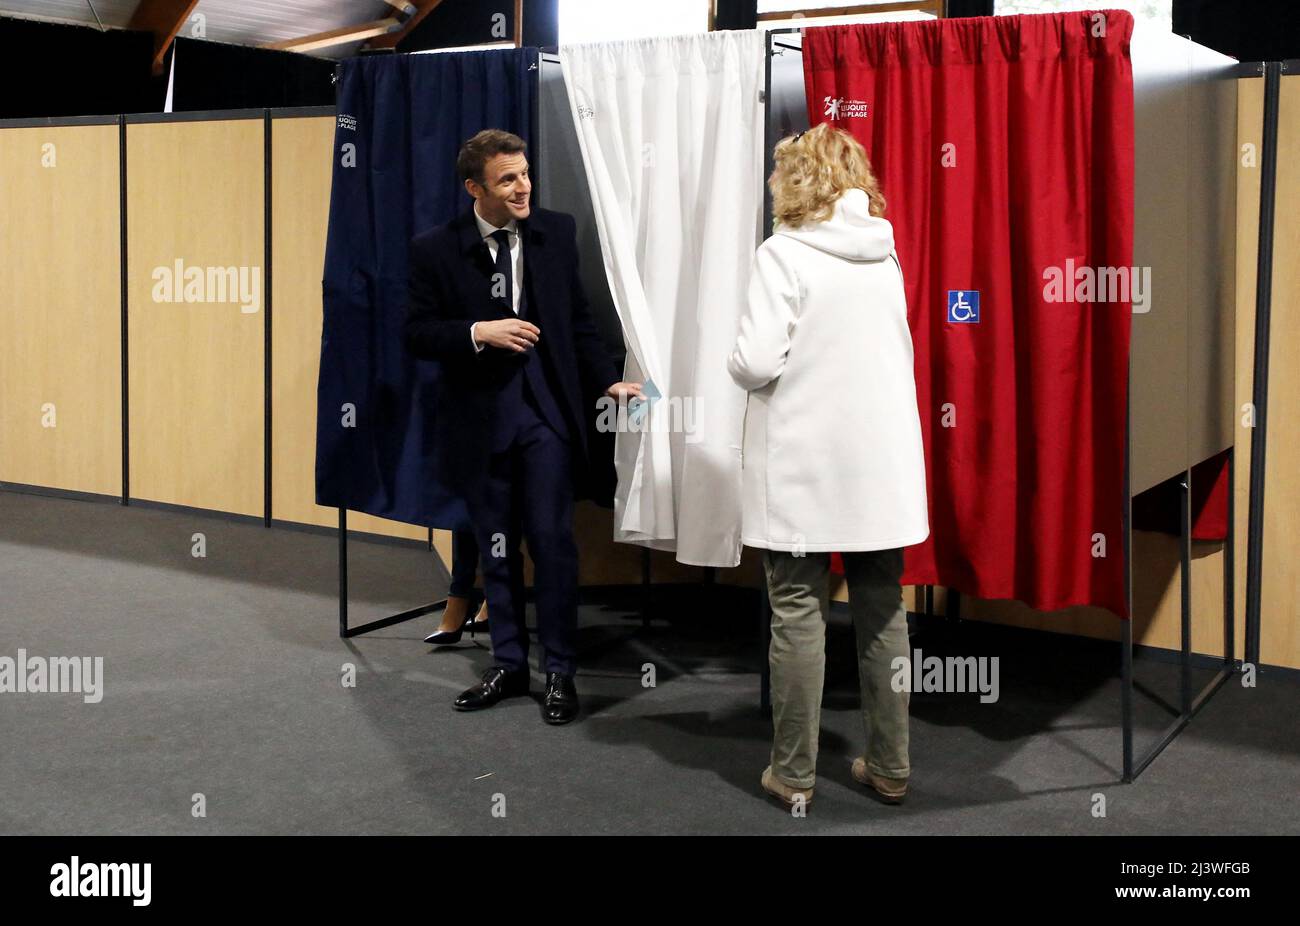 Le président français et le candidat du parti LREM Emmanuel Macron avec son épouse Brigitte Macron a voté pour le premier tour de l'élection présidentielle française dans un bureau de vote au Touquet, dans le nord de la France, le 10 avril 2022. Photo de Dominique Jacovides/Pool/ABACAPRESS.COM Banque D'Images